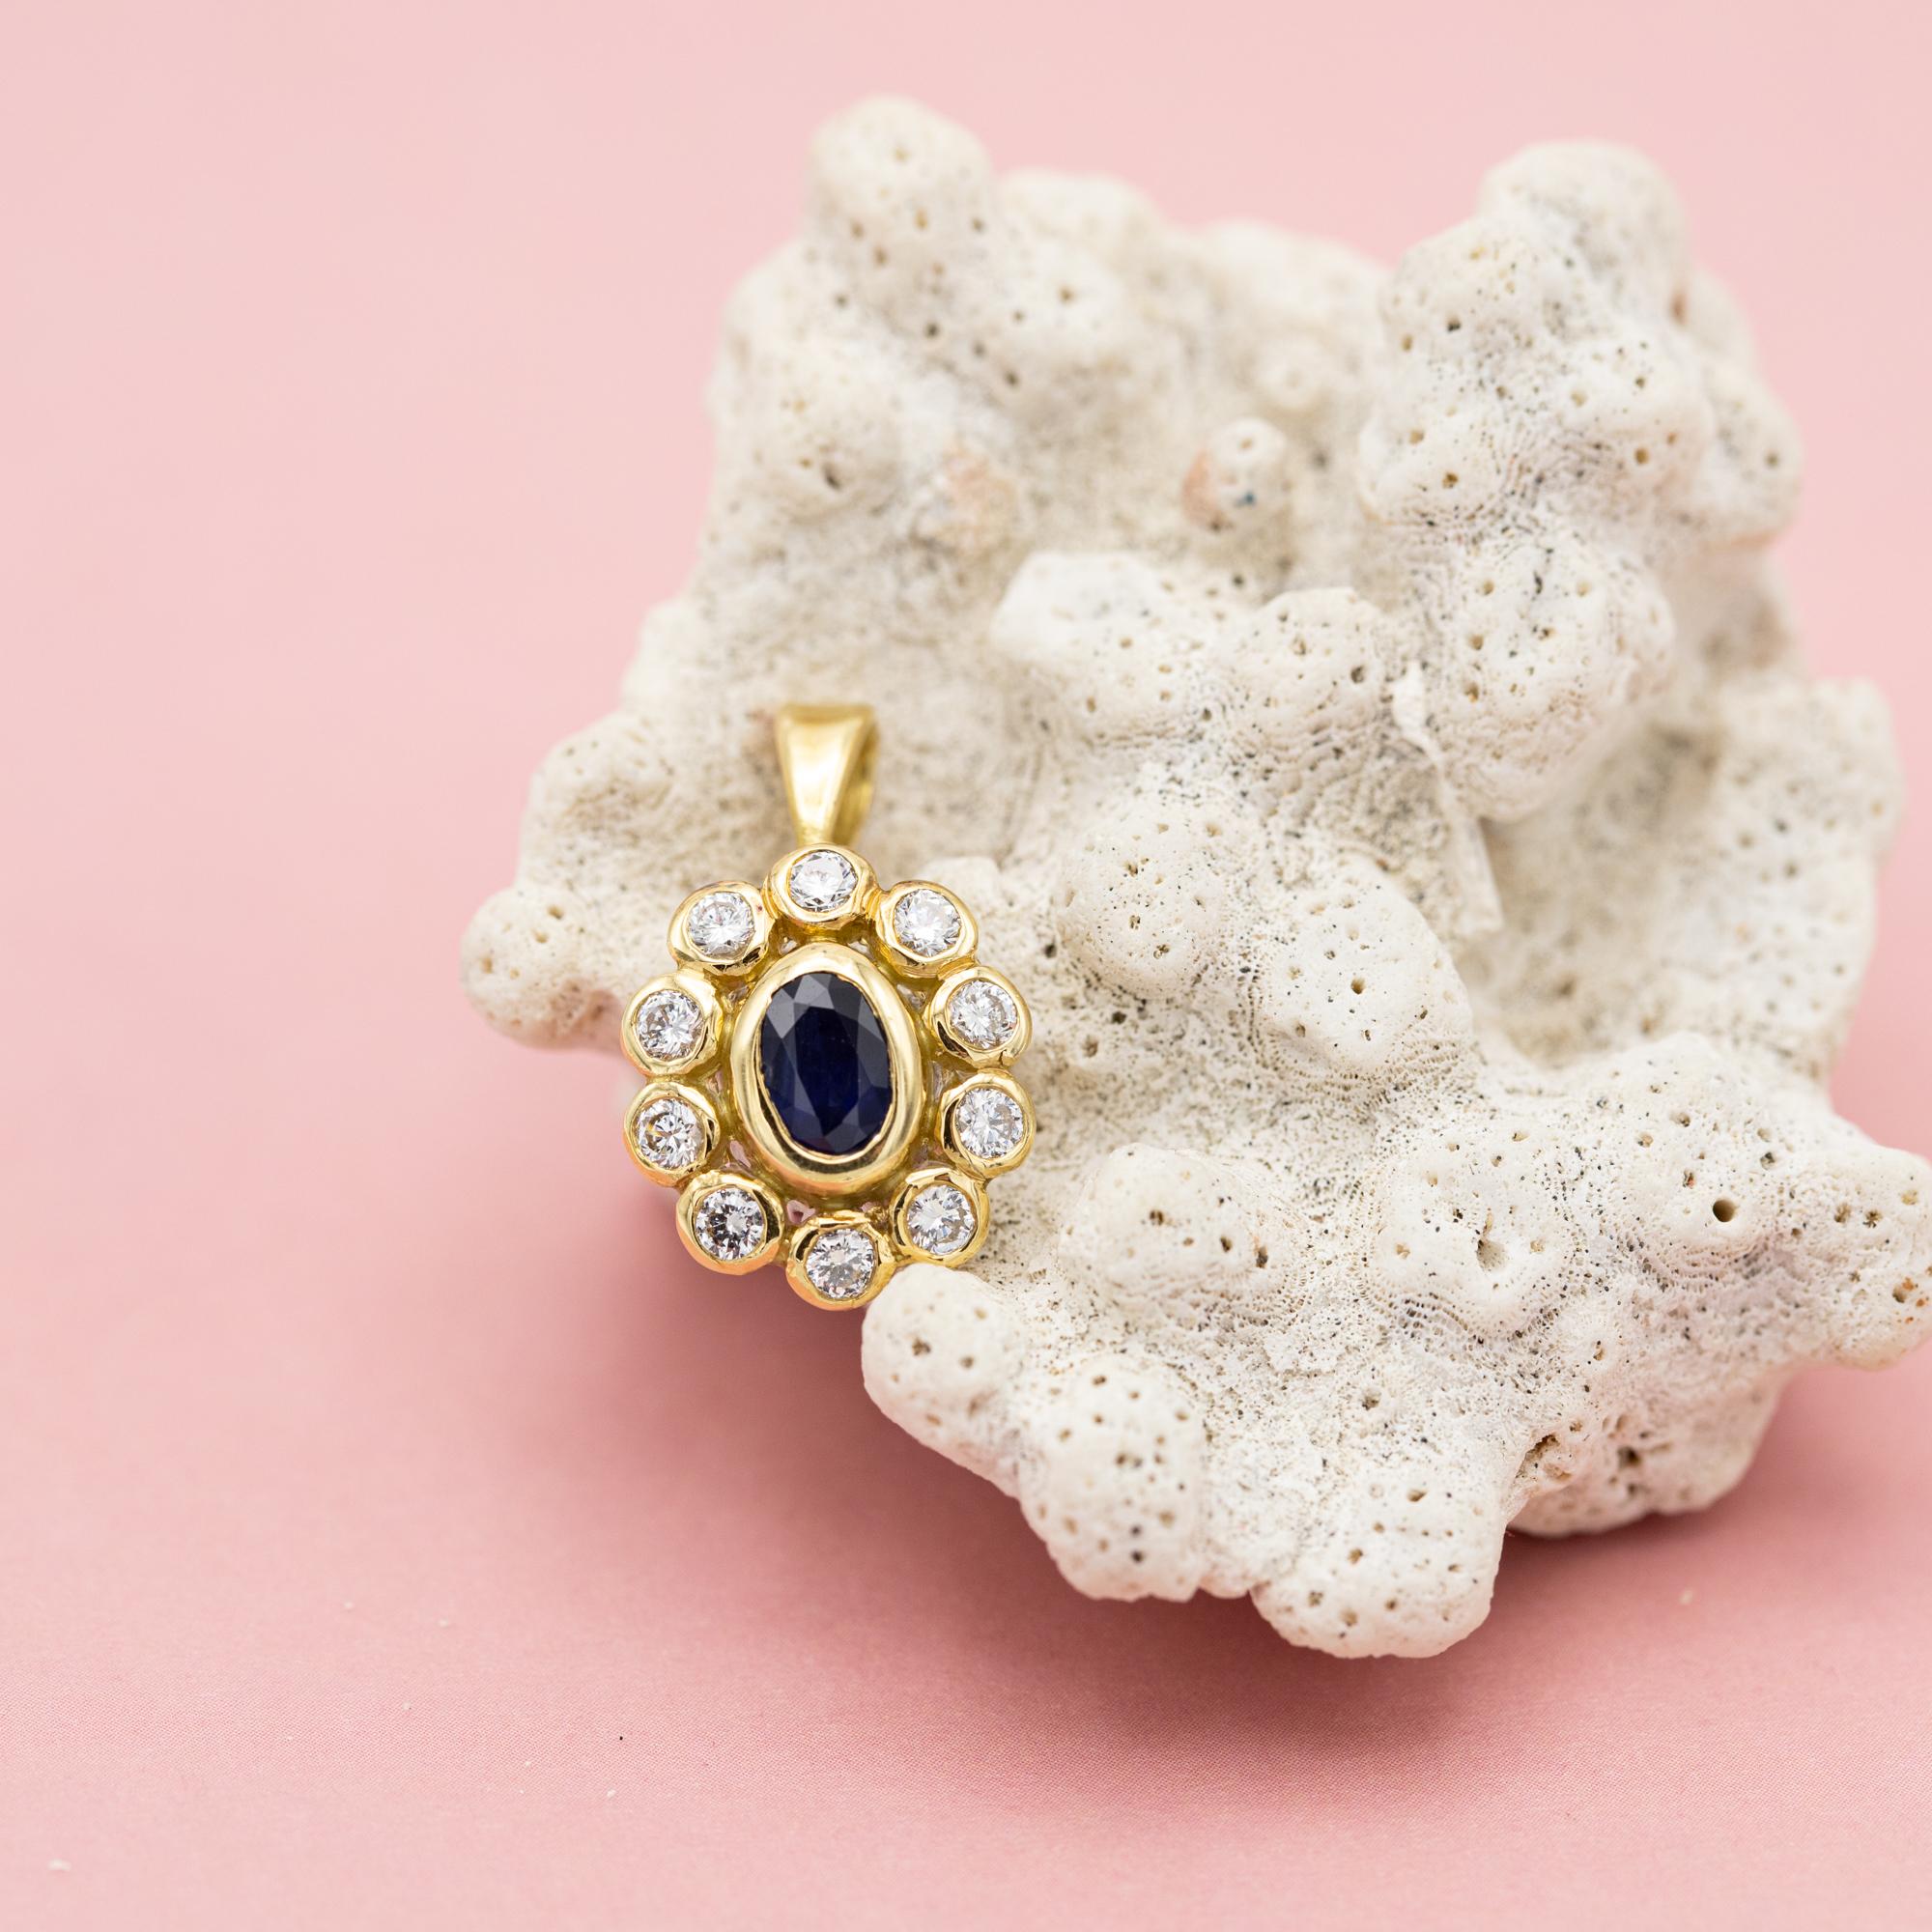 Zu verkaufen ist diese wunderbare floral Cluster Charme. Dieser Charme aus Diamanten und Saphiren zeigt eine wunderschöne kleine Blume, die in der Mitte mit zehn funkelnden Diamanten im Brillantschliff und einem Saphir im Ovalschliff besetzt ist.